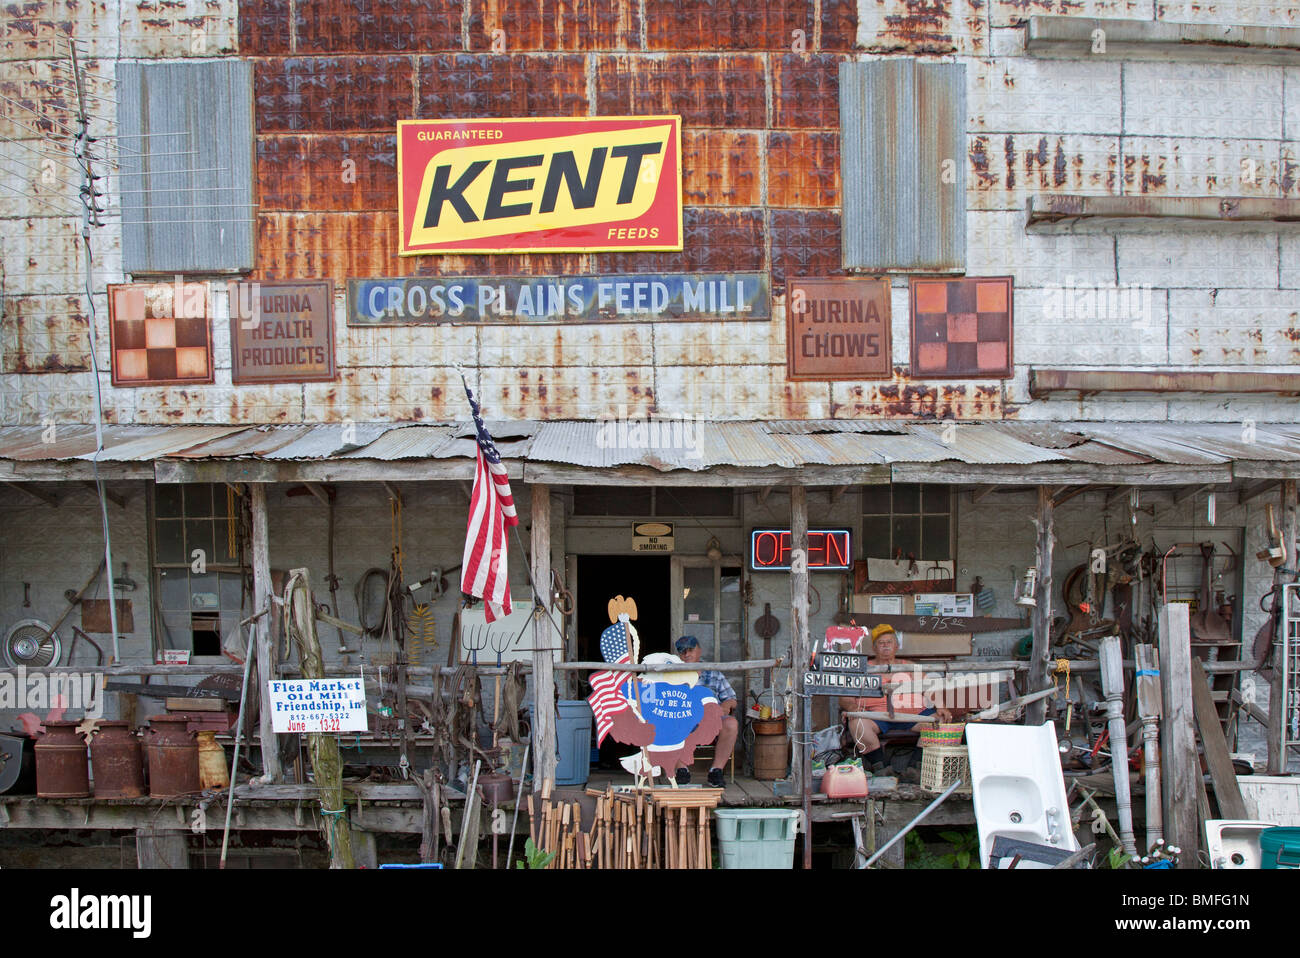 Attraversare le pianure, Indiana - La vecchia Croce pianure mulino di alimentazione, ora convertito in un negozio di posta indesiderata. Foto Stock